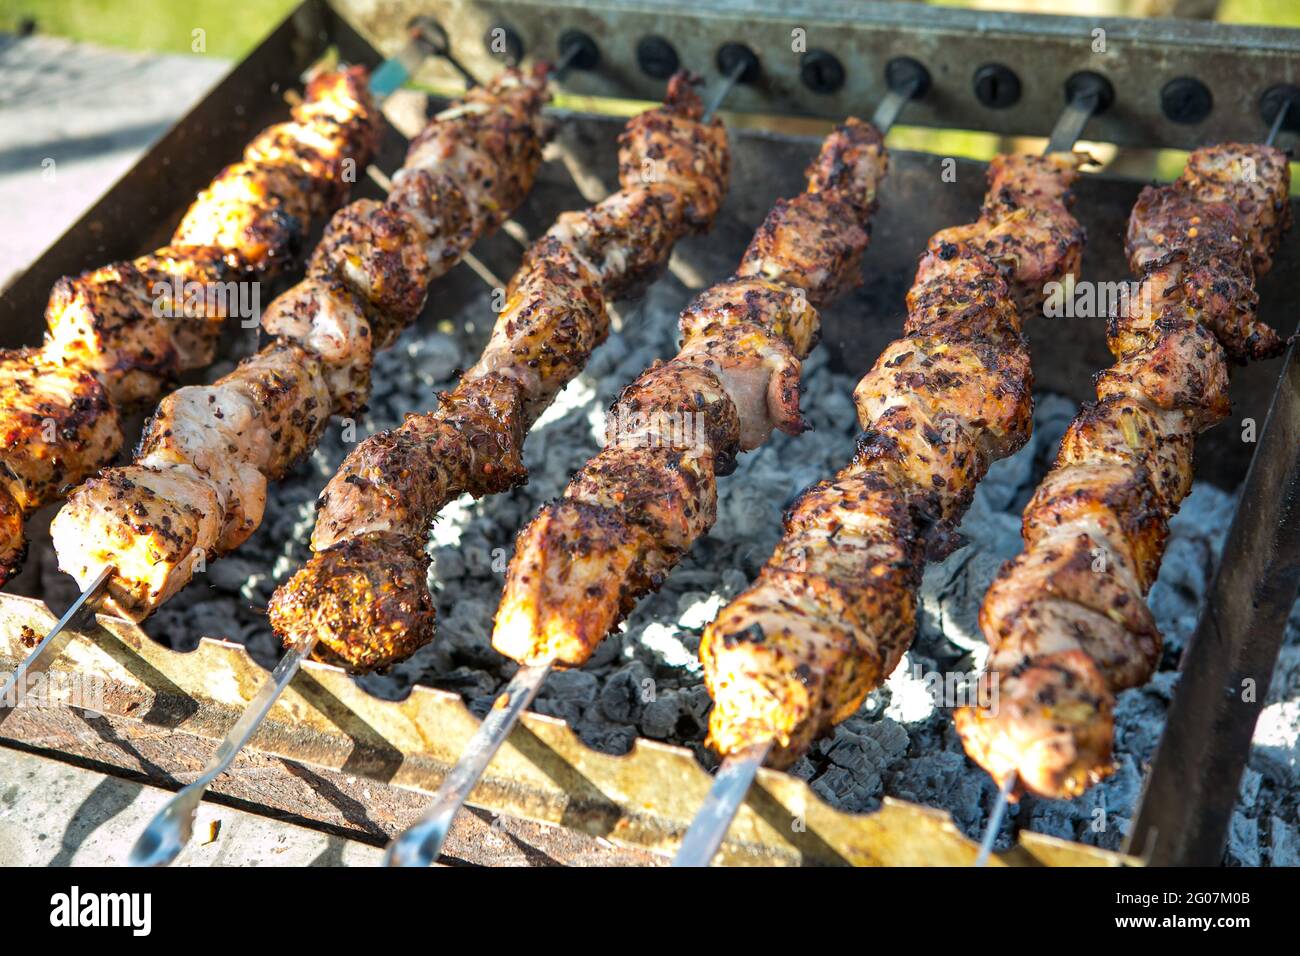 Shashlik ou shish kebab préparation sur barbecue grill sur charbon chaud. Morceaux de viande de porc grillés sur brochettes de métal. Banque D'Images